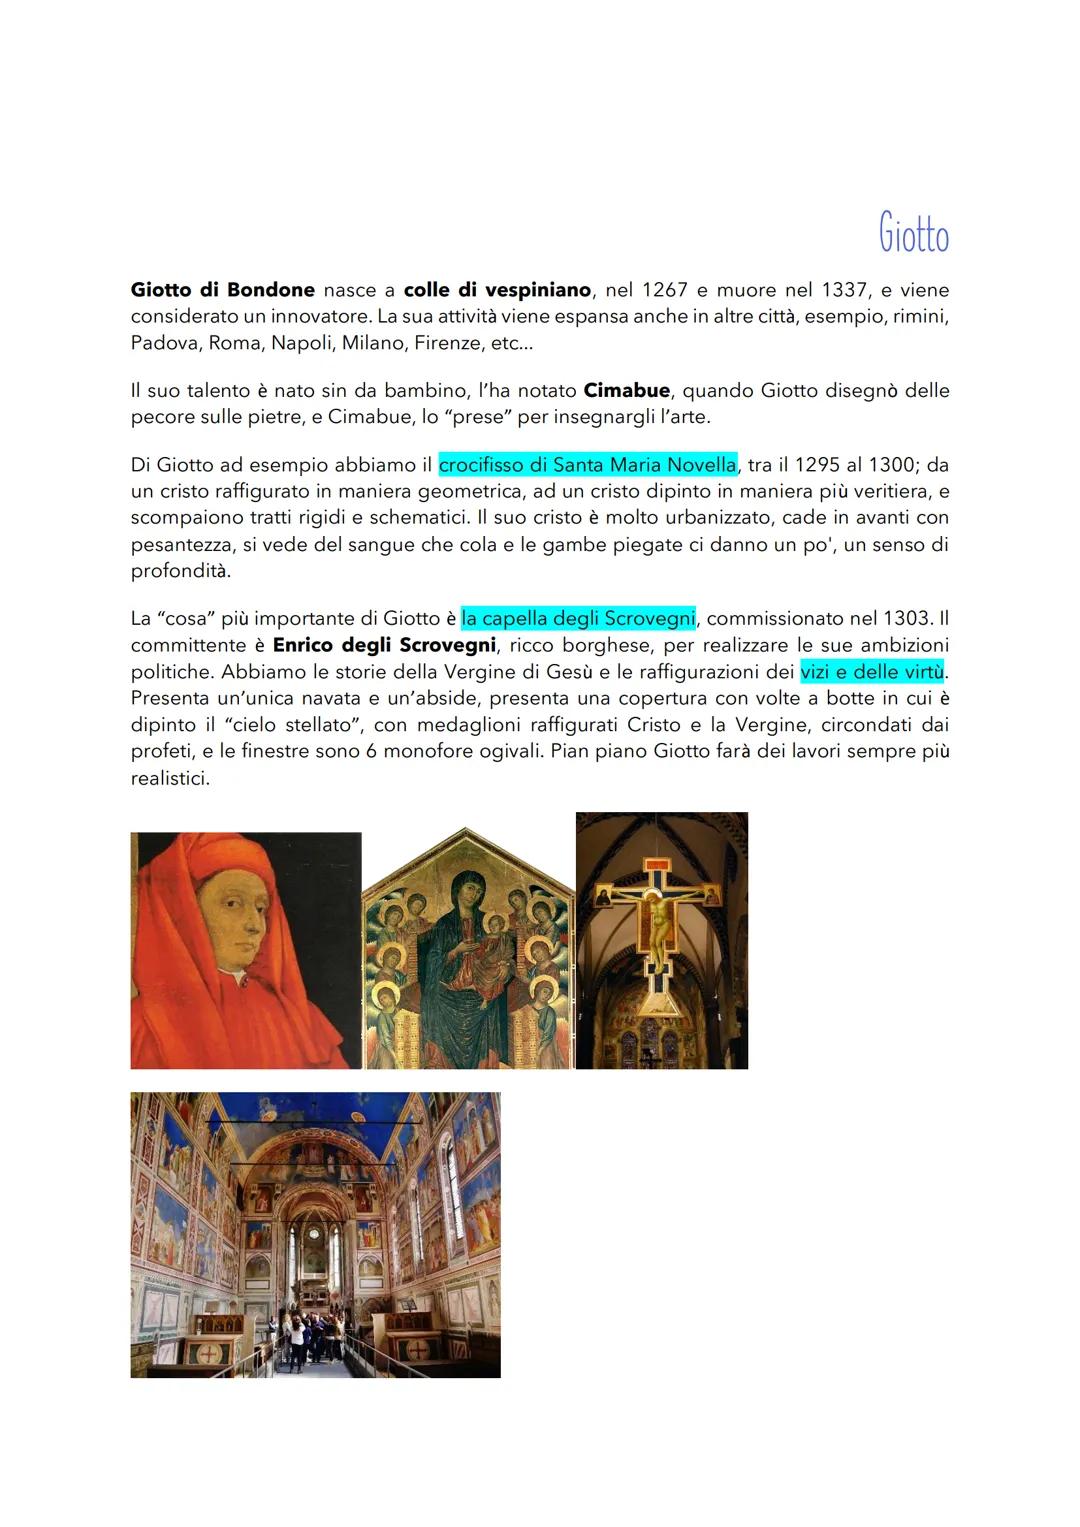 ARGOMENTI
Mettere delle fonti nell'argomento
● Perché nasce a Firenze?
Livello storico e artistico
●
Brunelleschi
La cupola di santa Maria d